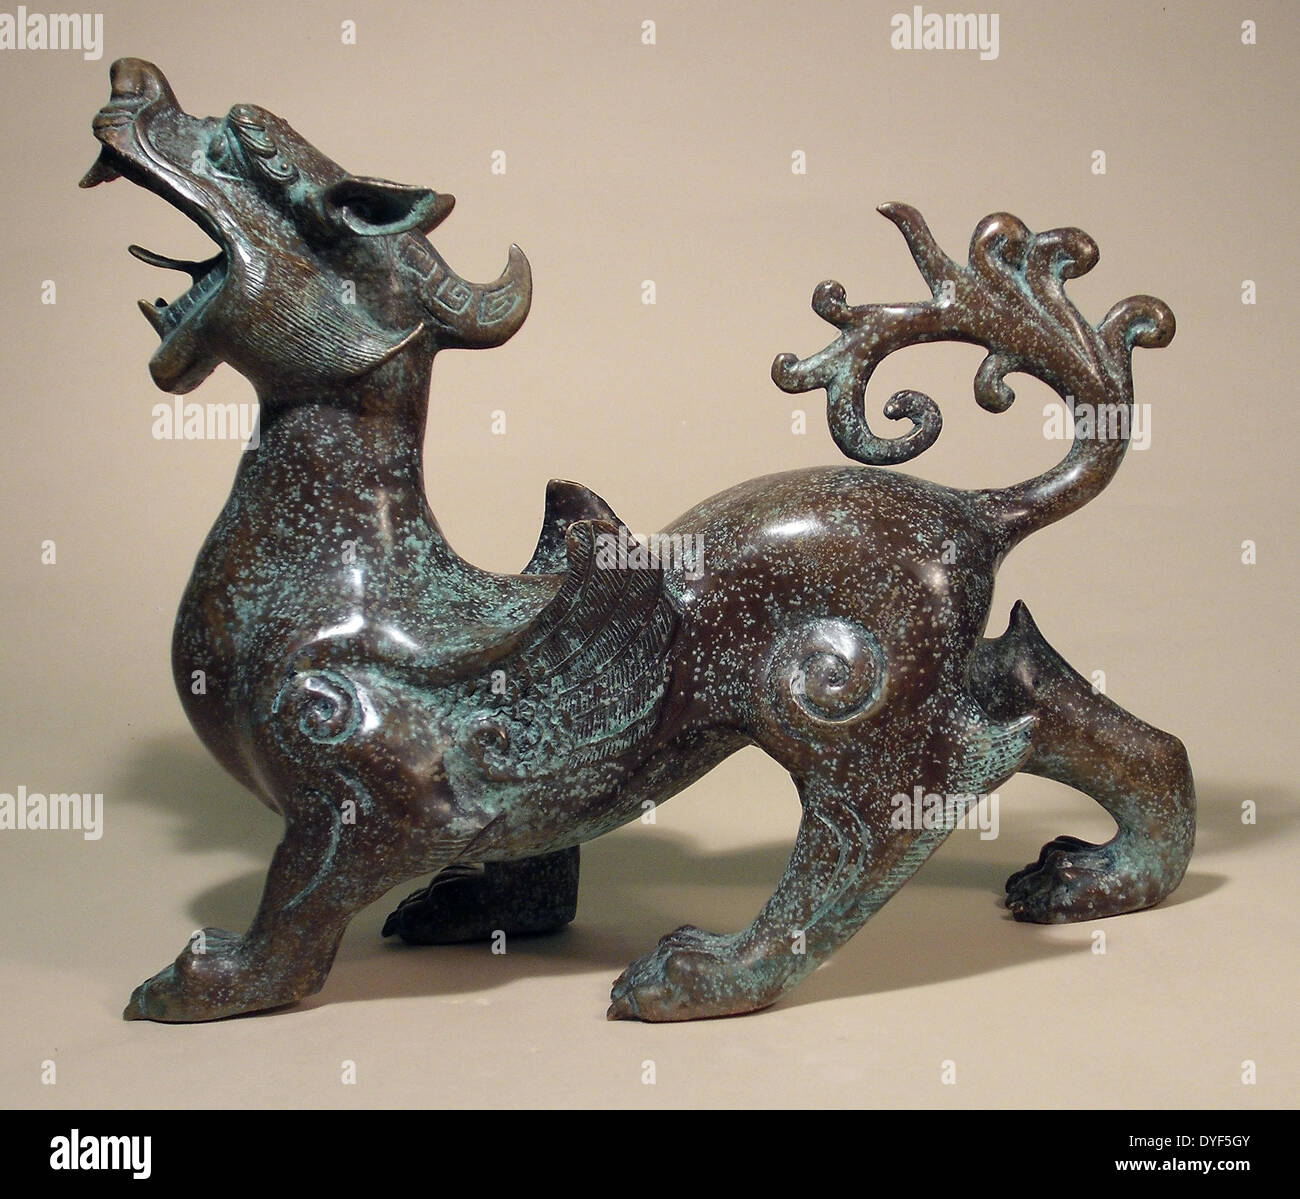 La antigua China: el dragón alado, Chi Lyn, la Dinastía Qing, 1644 - 1919 AD. Bronce. Foto de stock